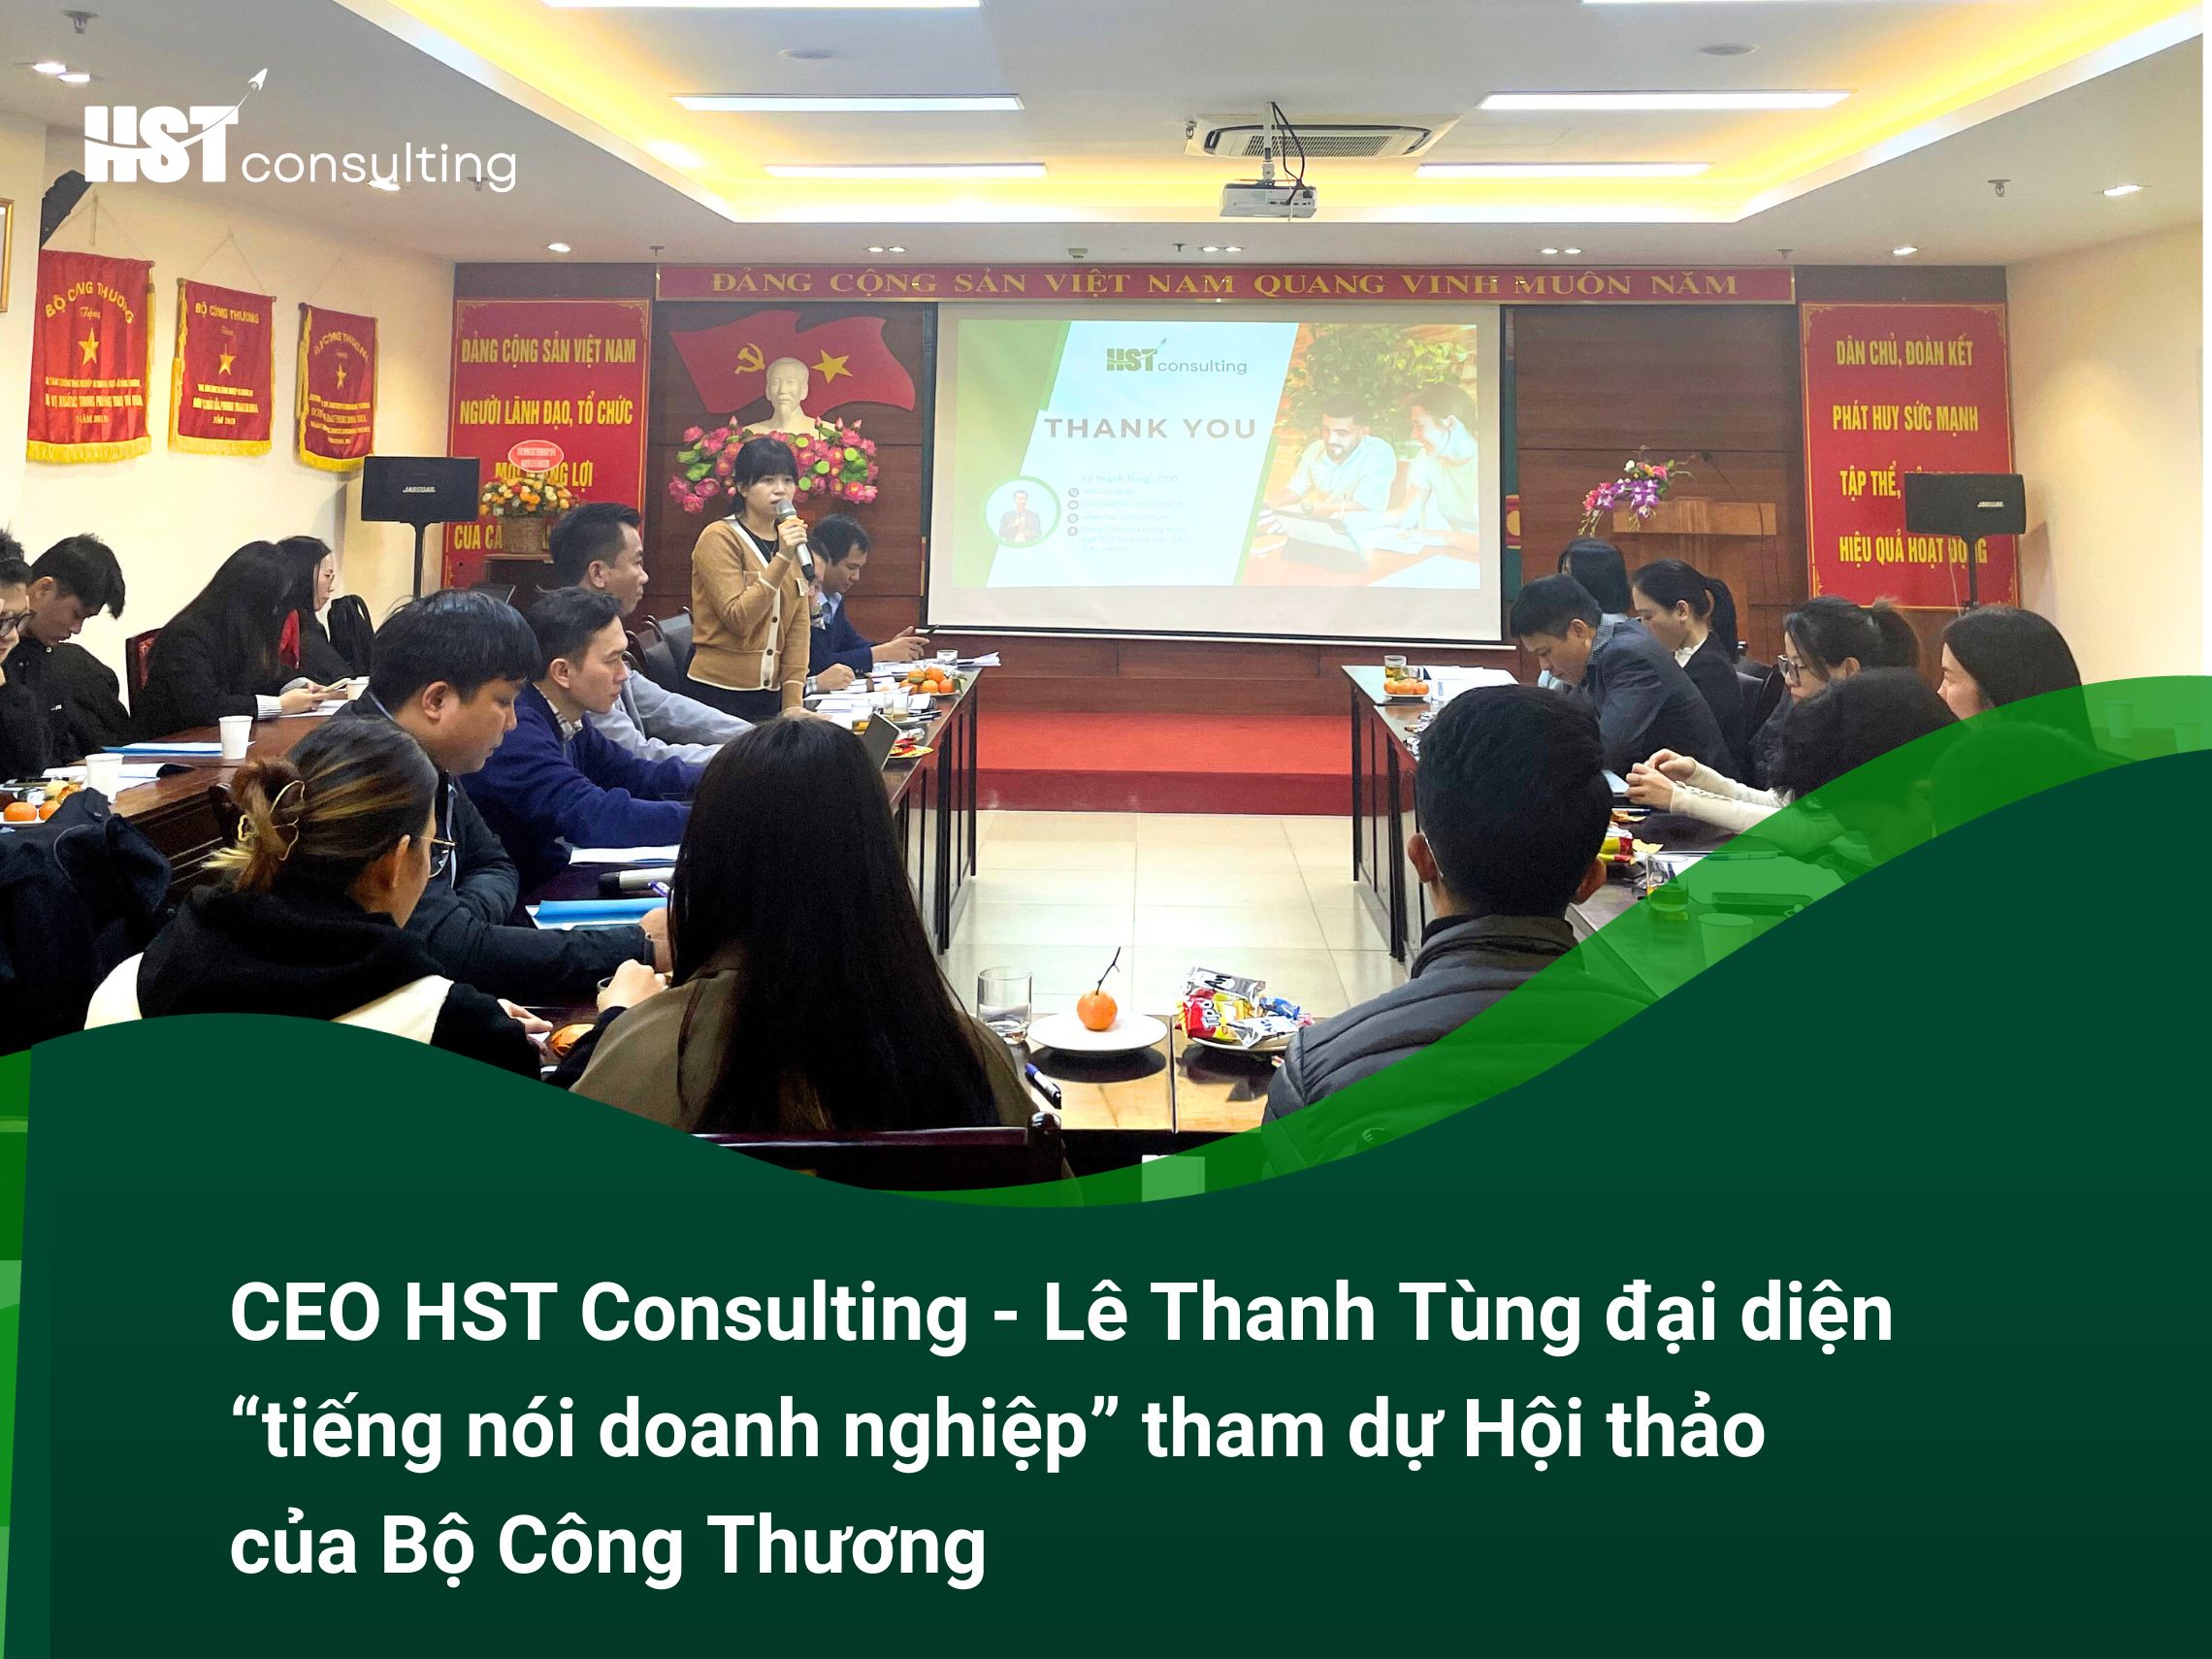 CEO HST Consulting - Lê Thanh Tùng đại diện “tiếng nói doanh nghiệp” tham dự Hội thảo của Bộ Công Thương